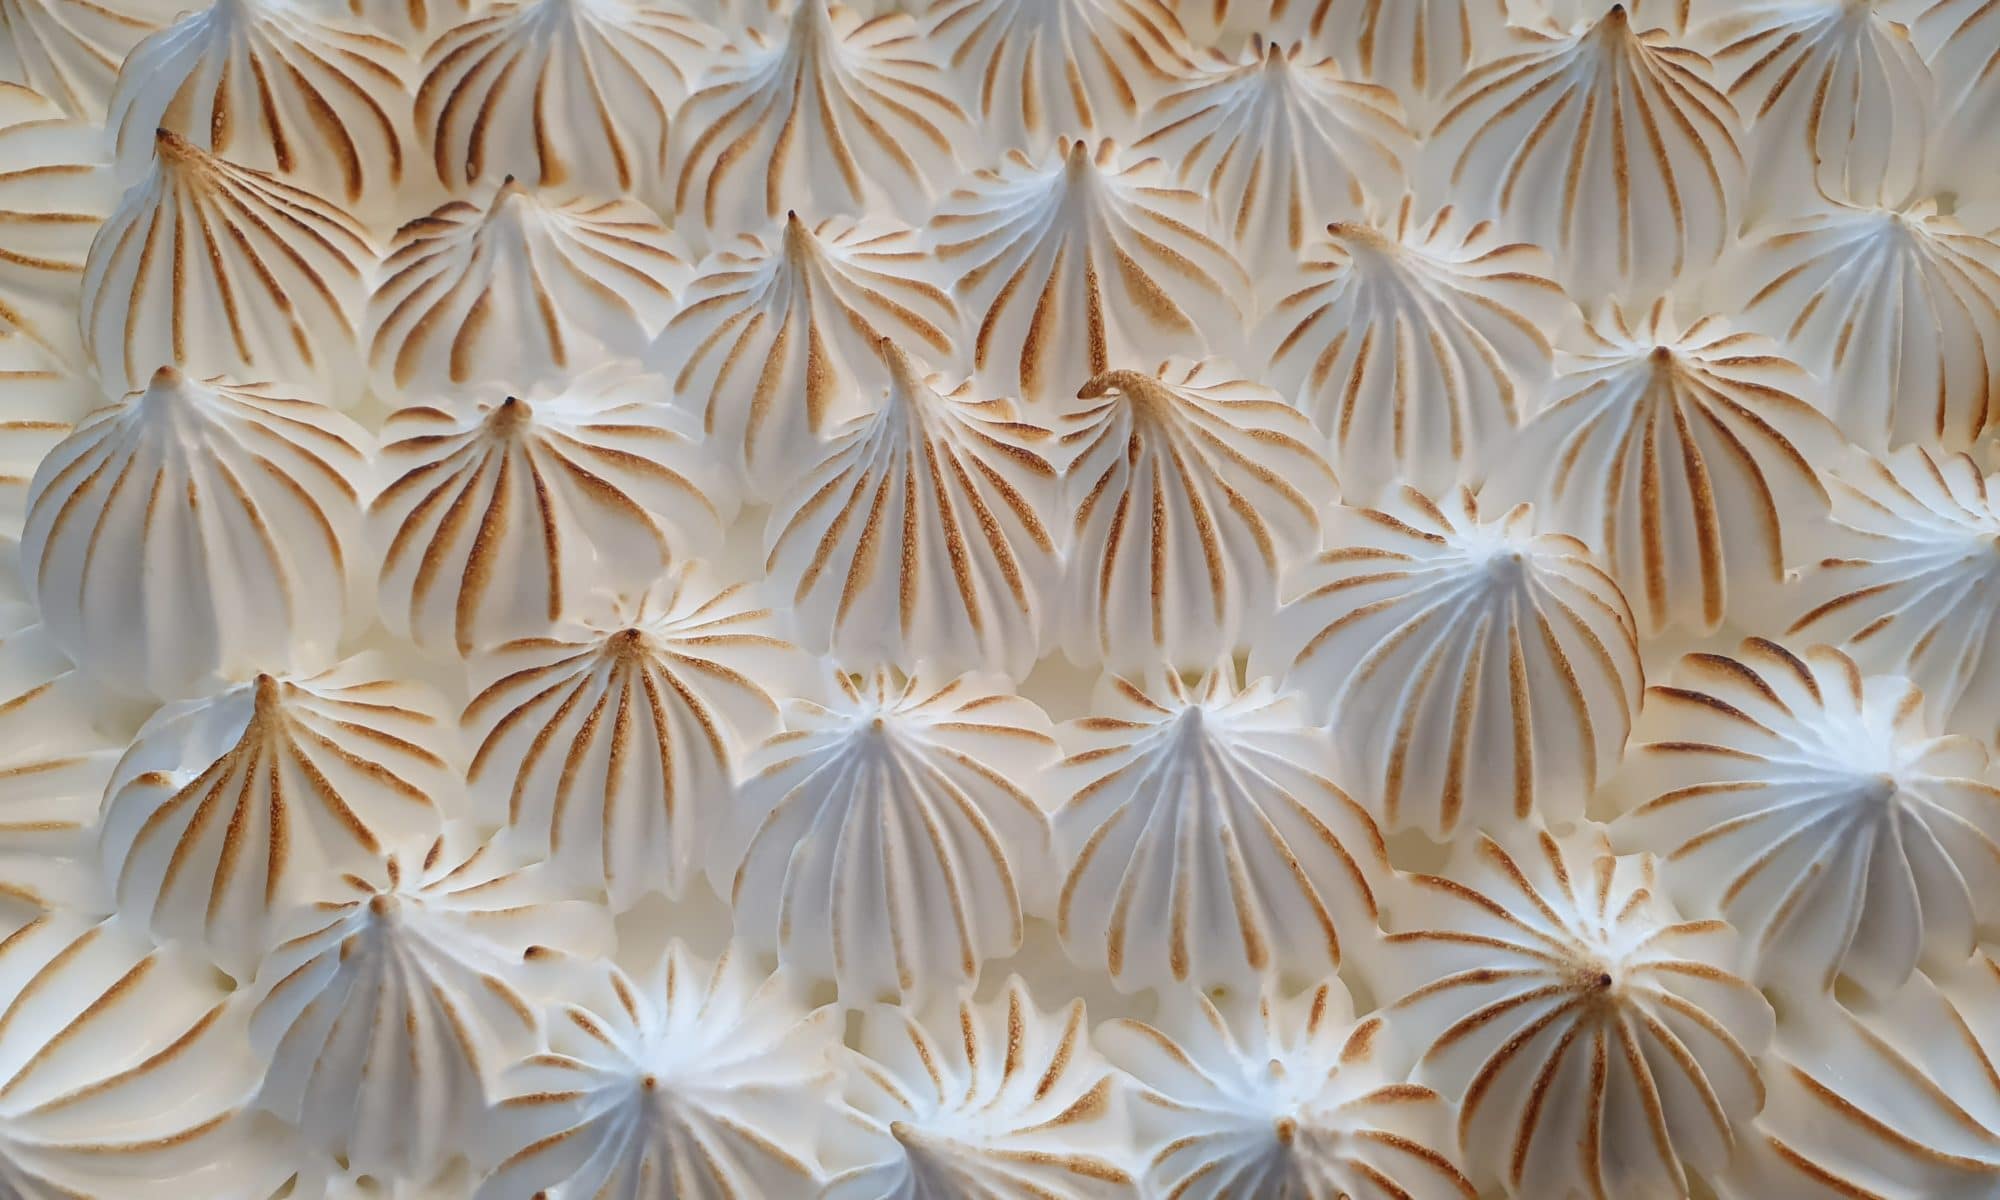 One of my favorite pastry, the lemon meringuepie